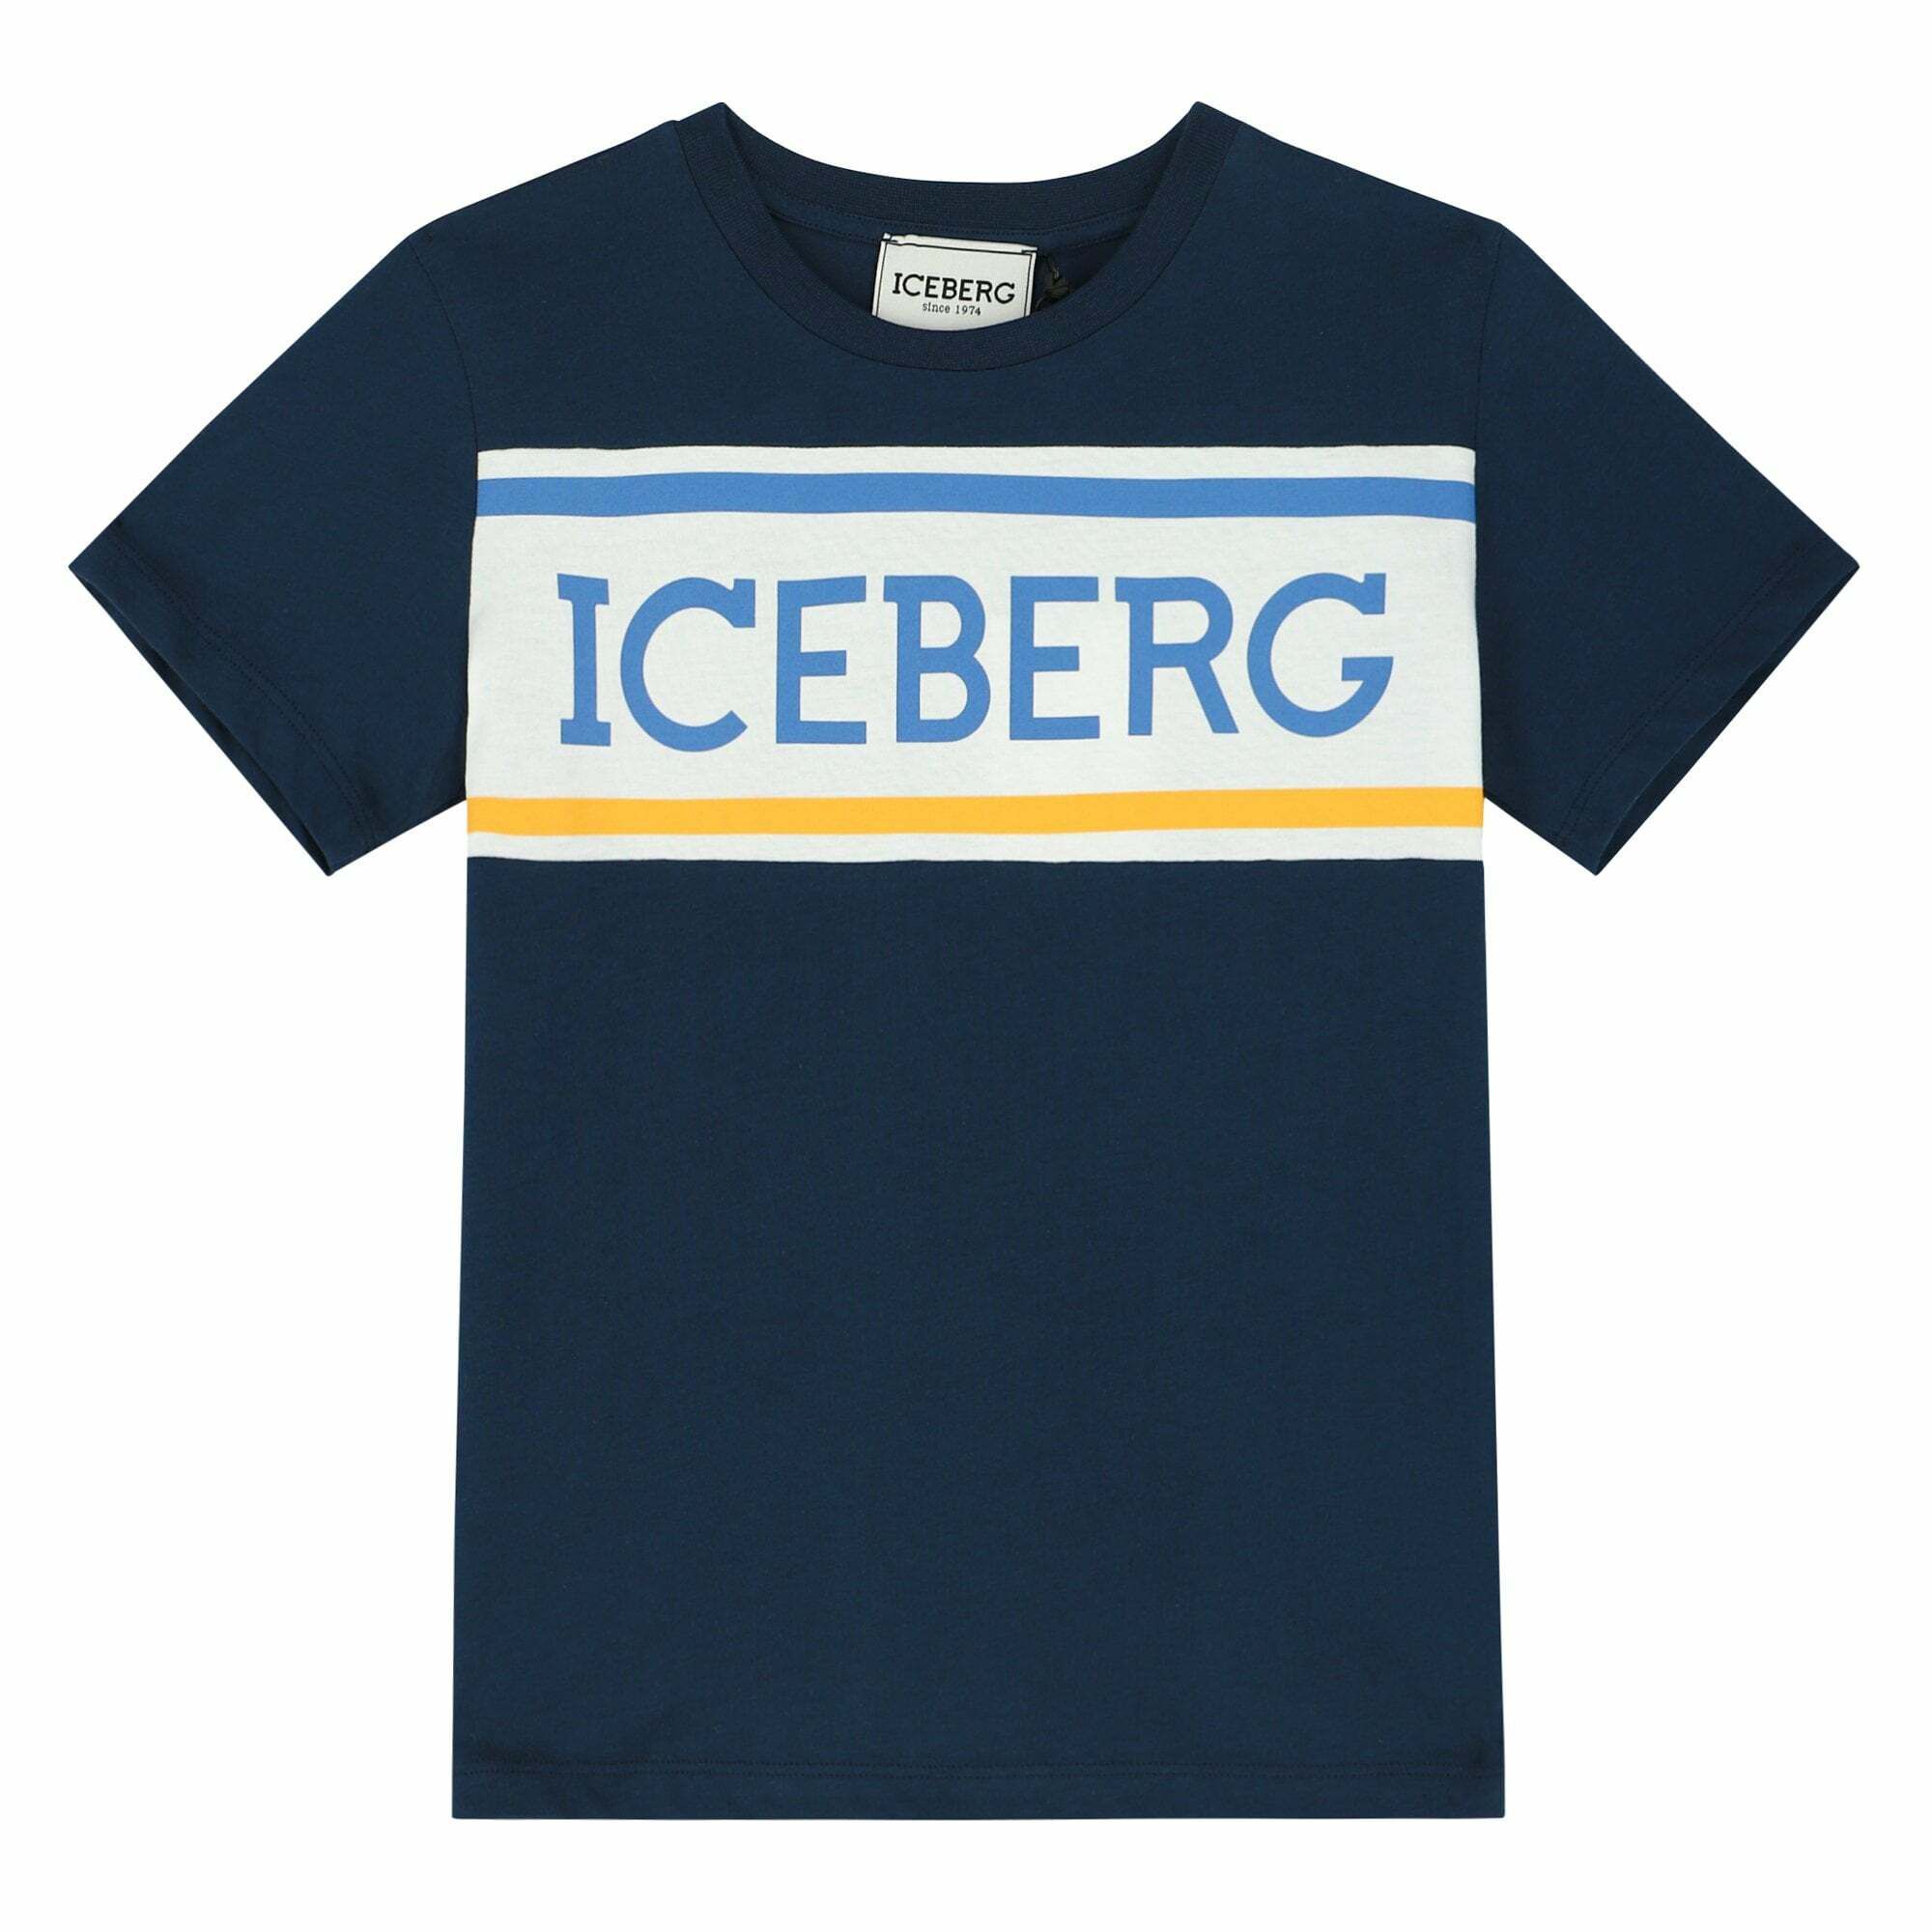 新作モデル ICE ICEBERG Patterned shirts シャツ?ブラウス - fundgenesis.com